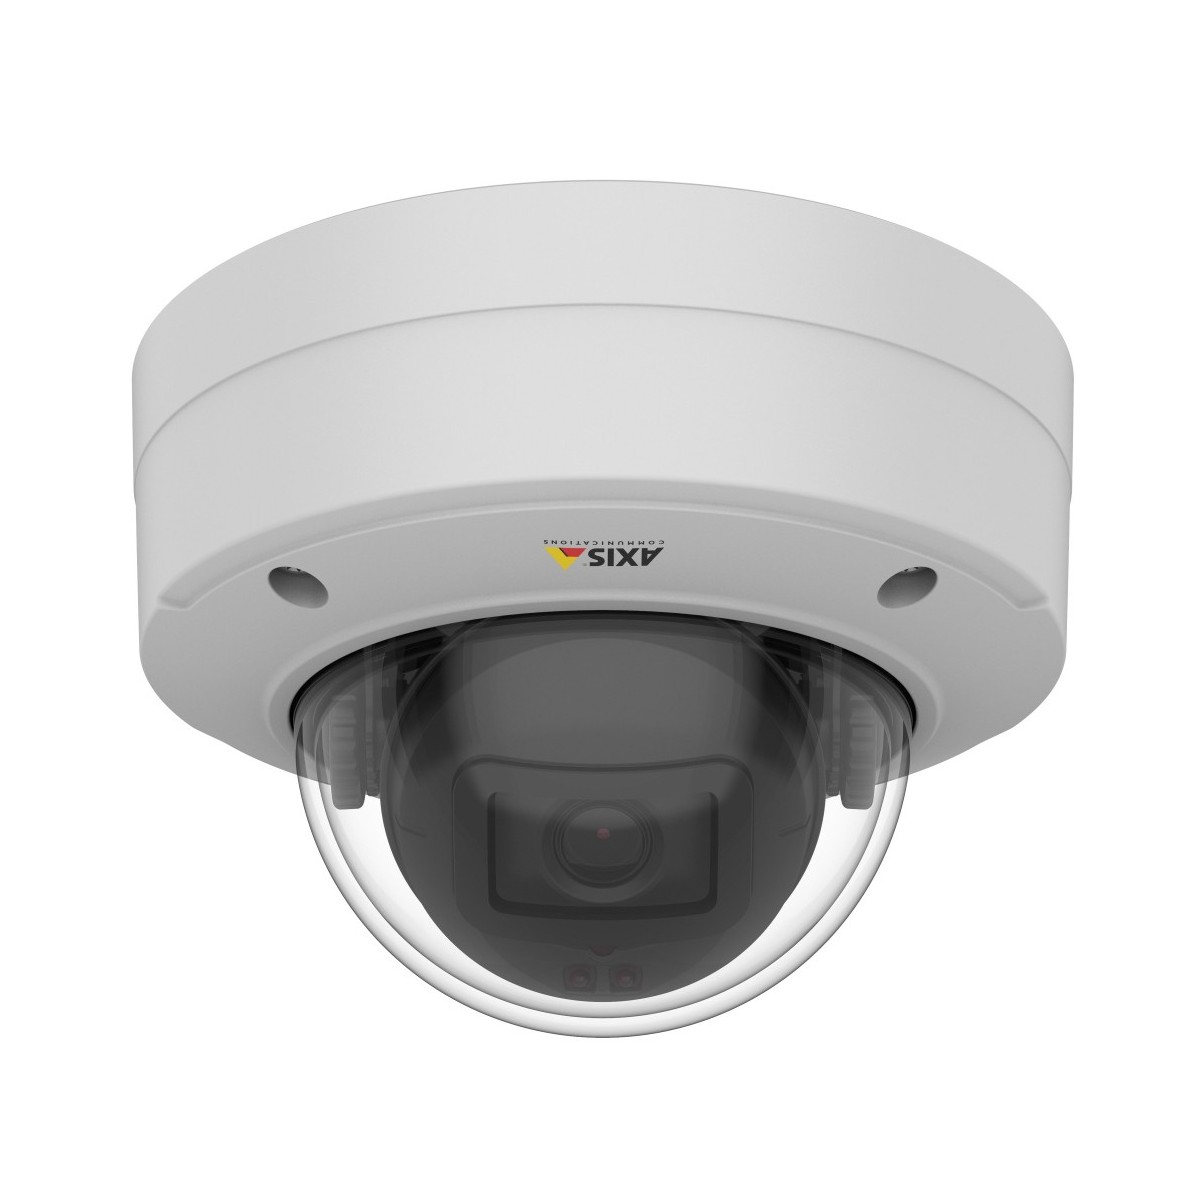 Axis M3206-LVE - IP security camera - Outdoor - Wired - EN 55032 A - EN 55024 - EN 61000-6-1 - EN 61000-6-2 - FCC 15 B A - ICES-